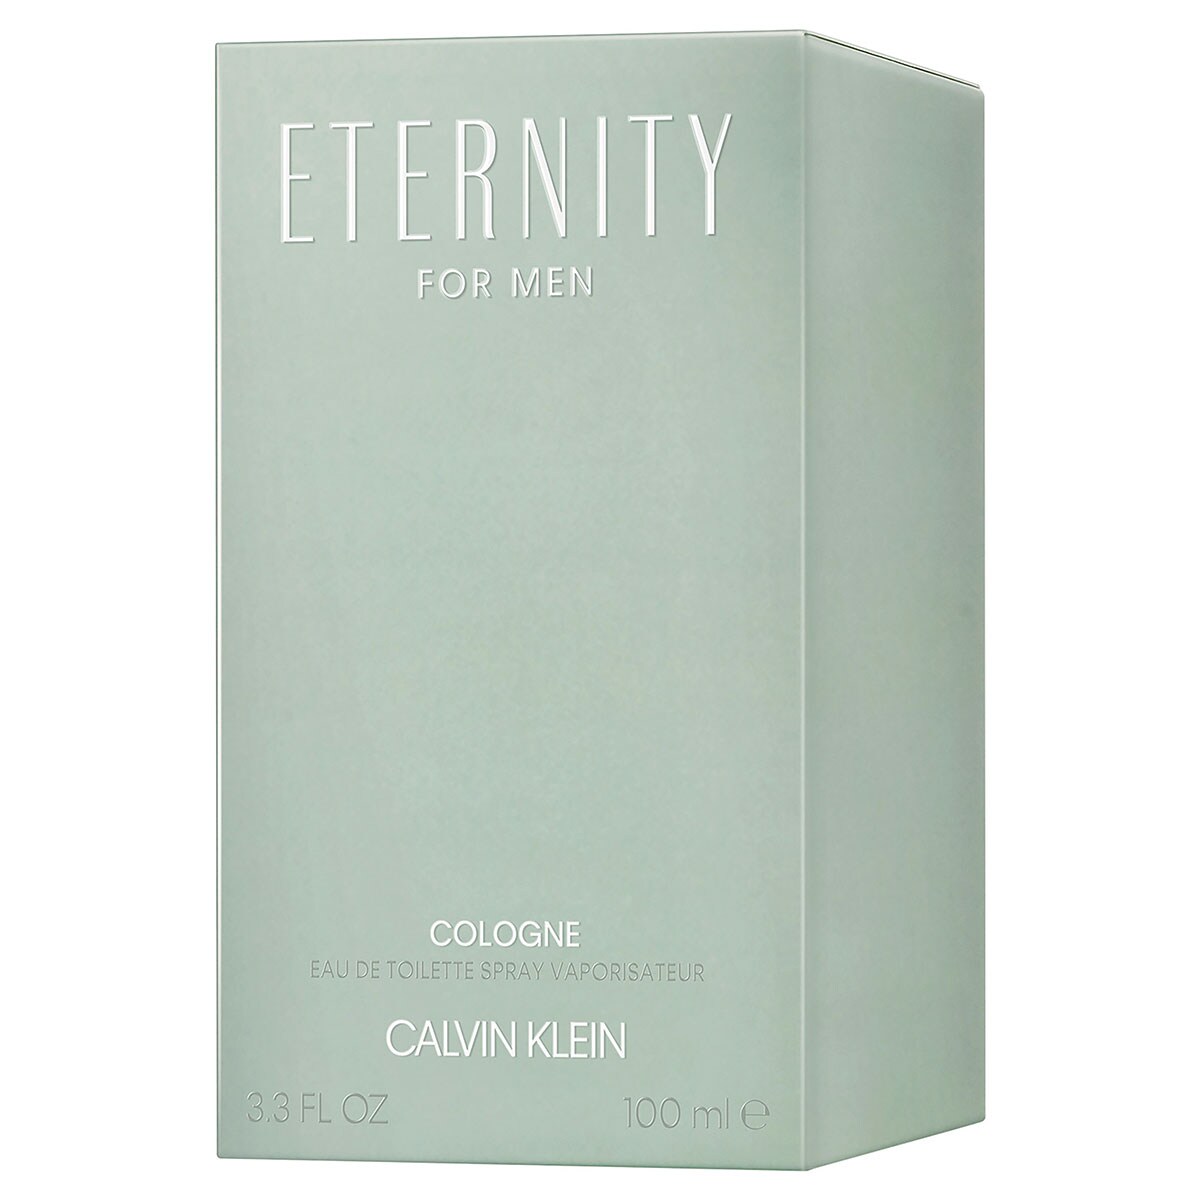 Calvin Klein Eternity for Men Cologne Eau de Toilette 100ml